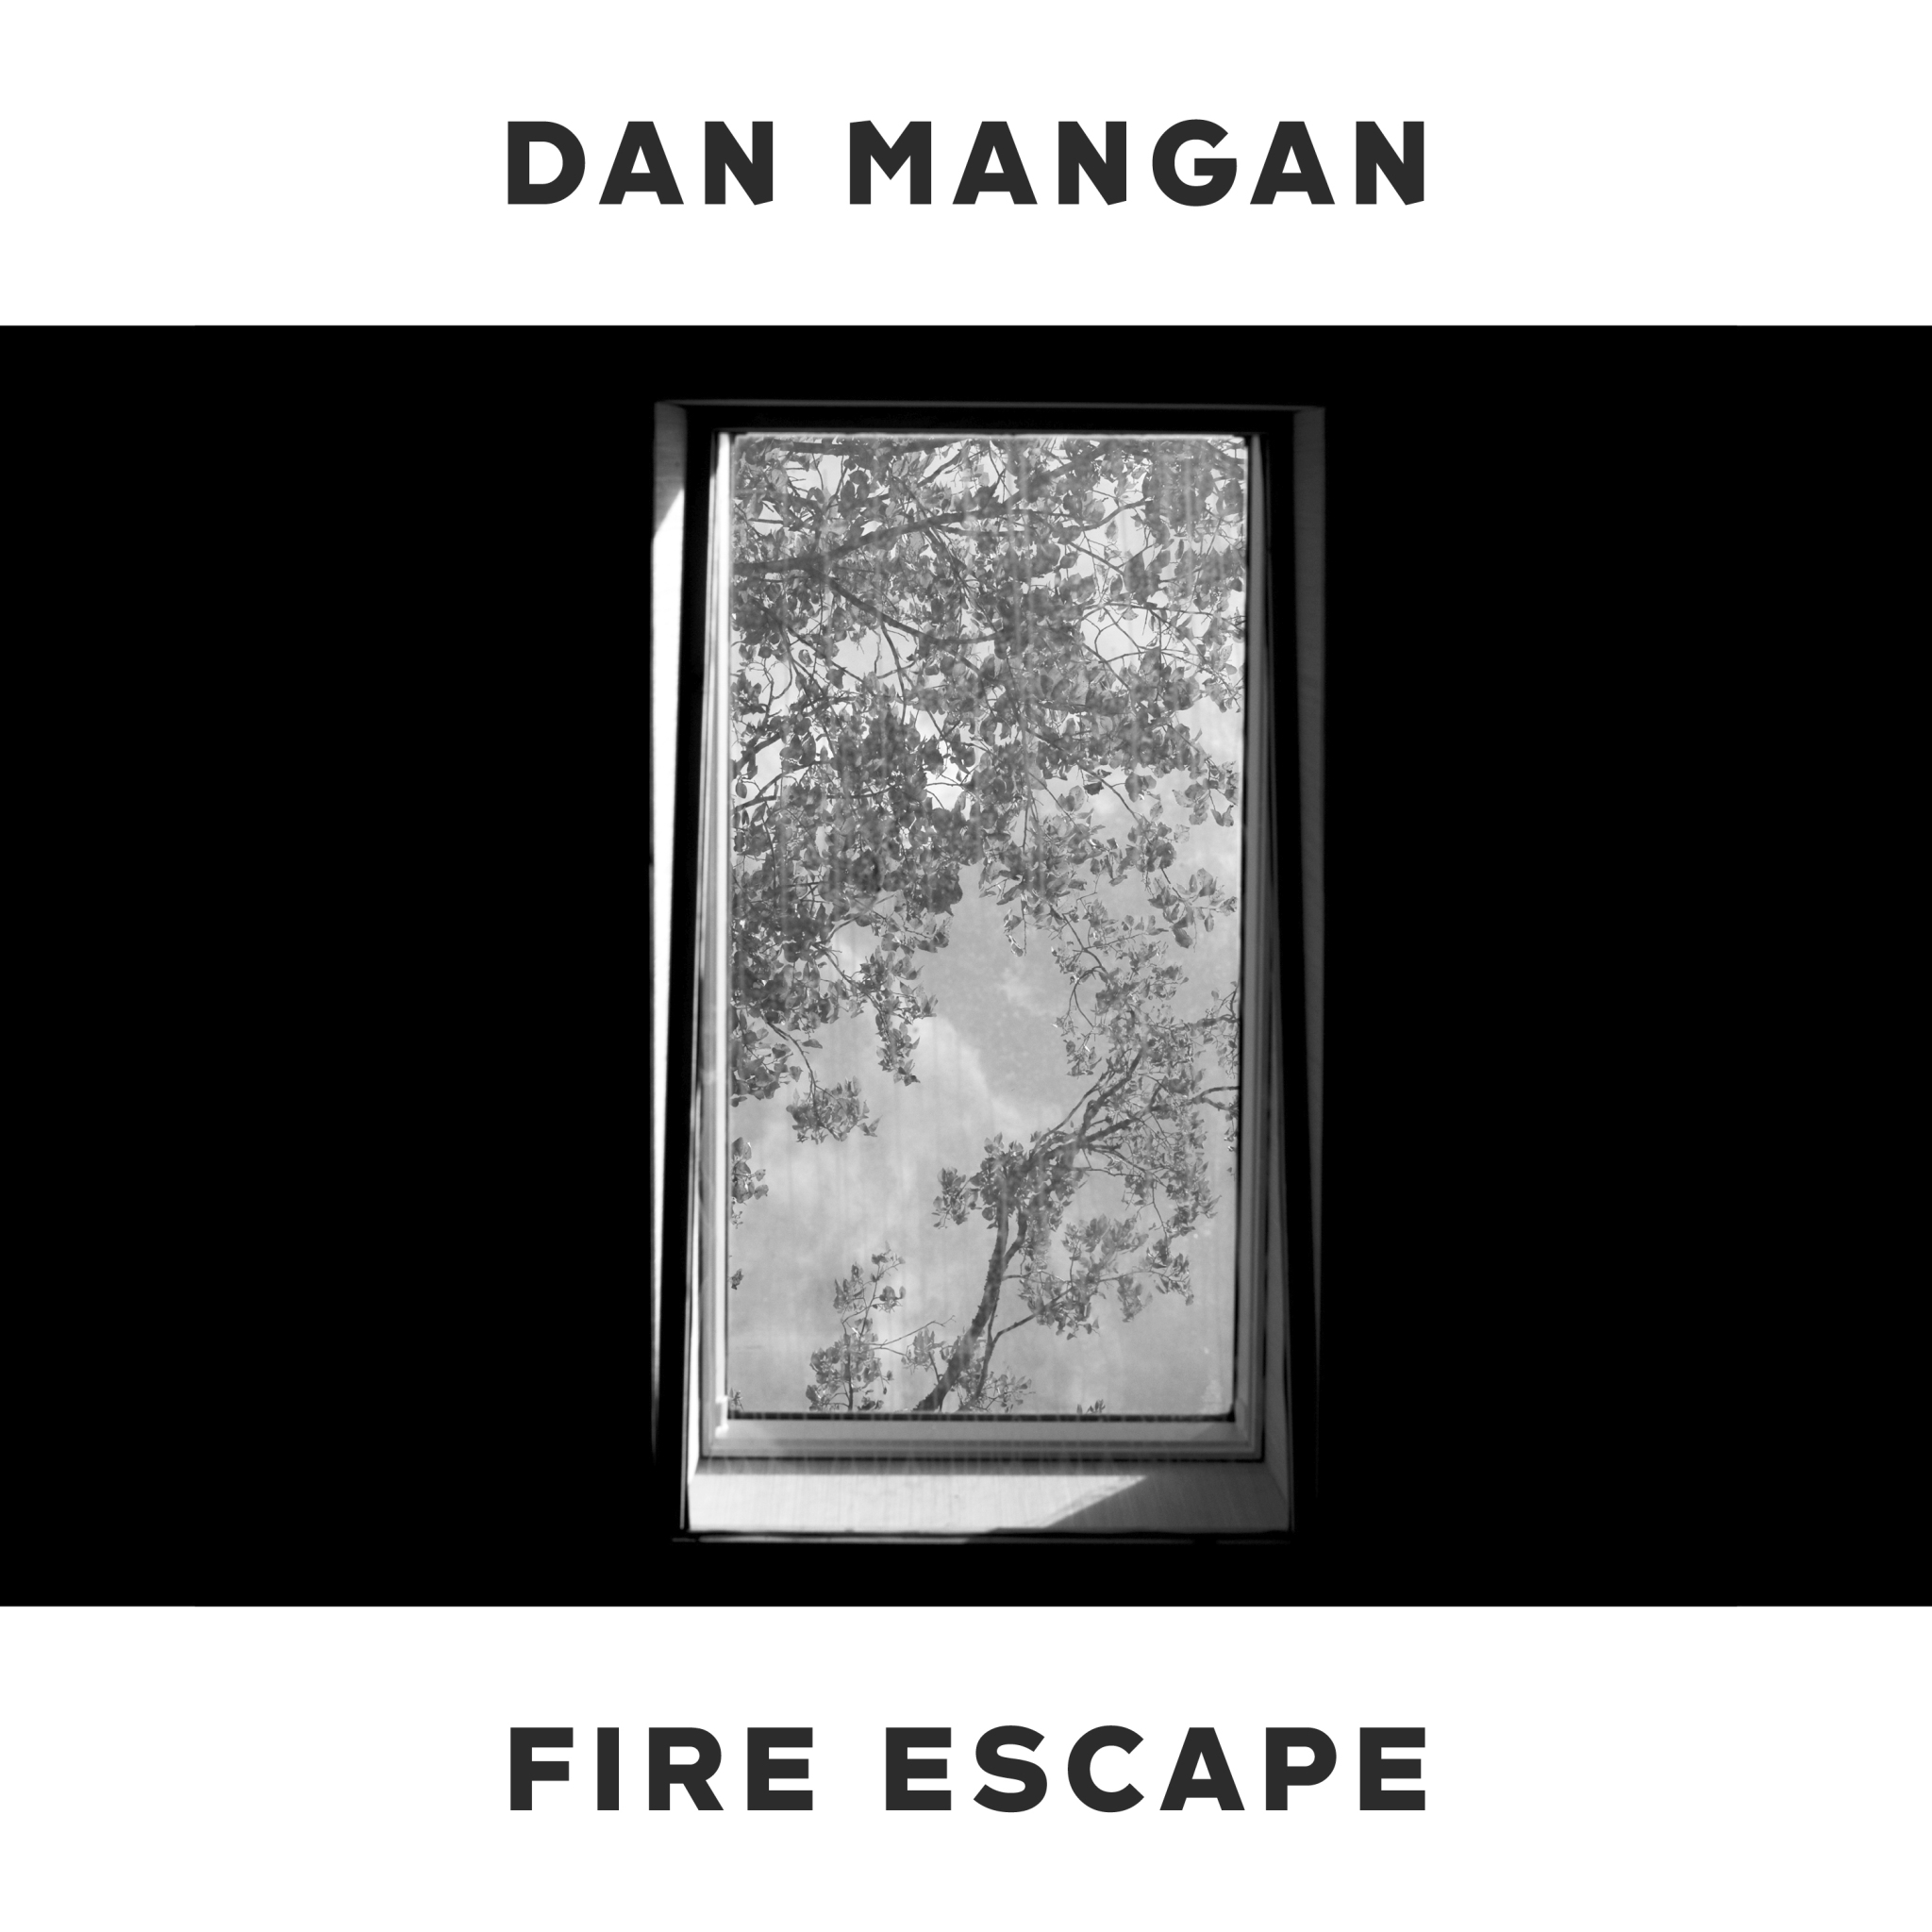 Dan Mangan shares “Fire Escape”